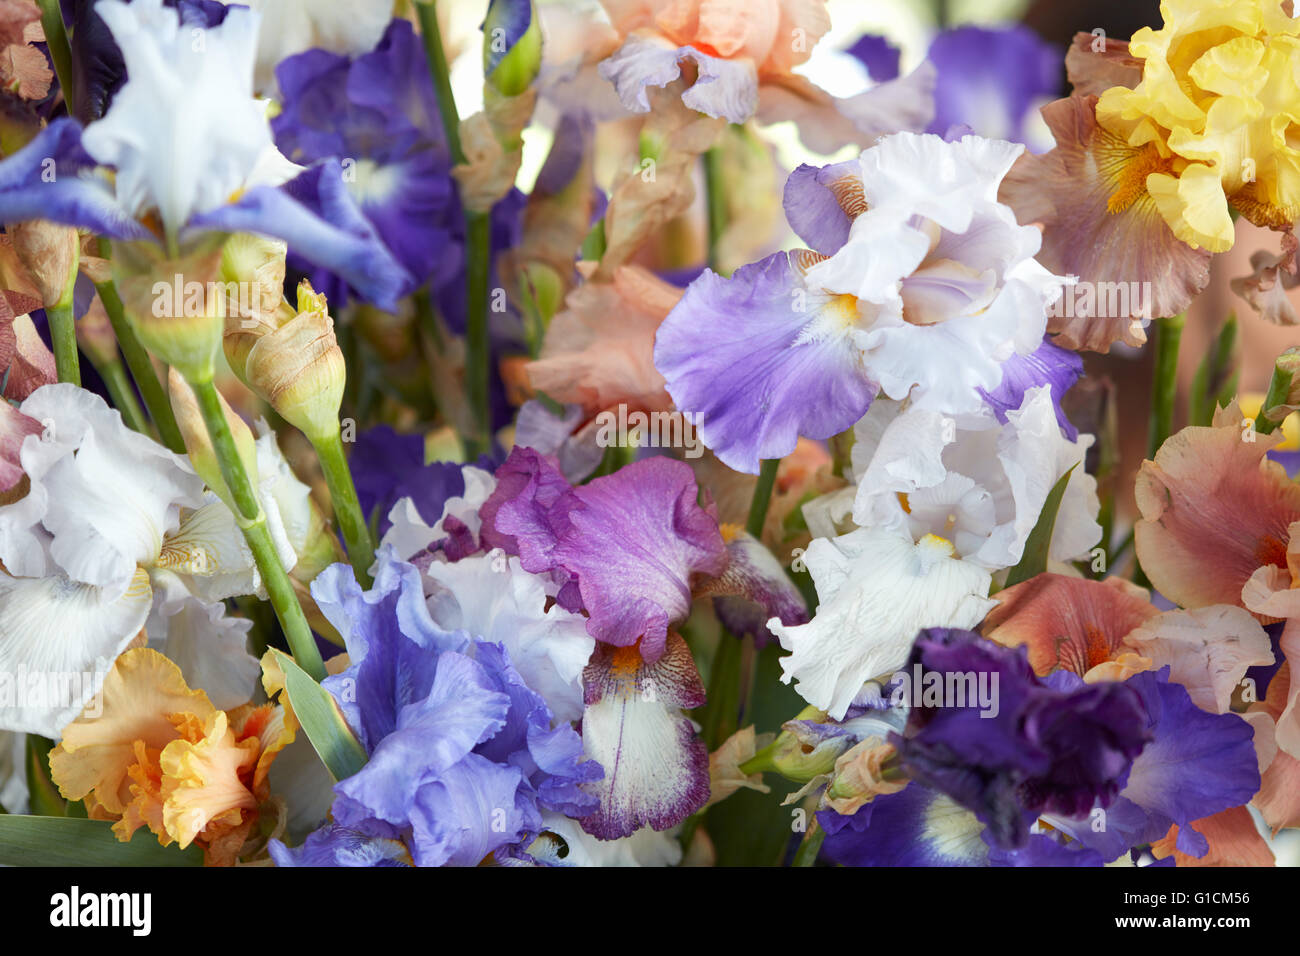 Iris fleurs en bleu, pourpre, jaune couleurs background Banque D'Images